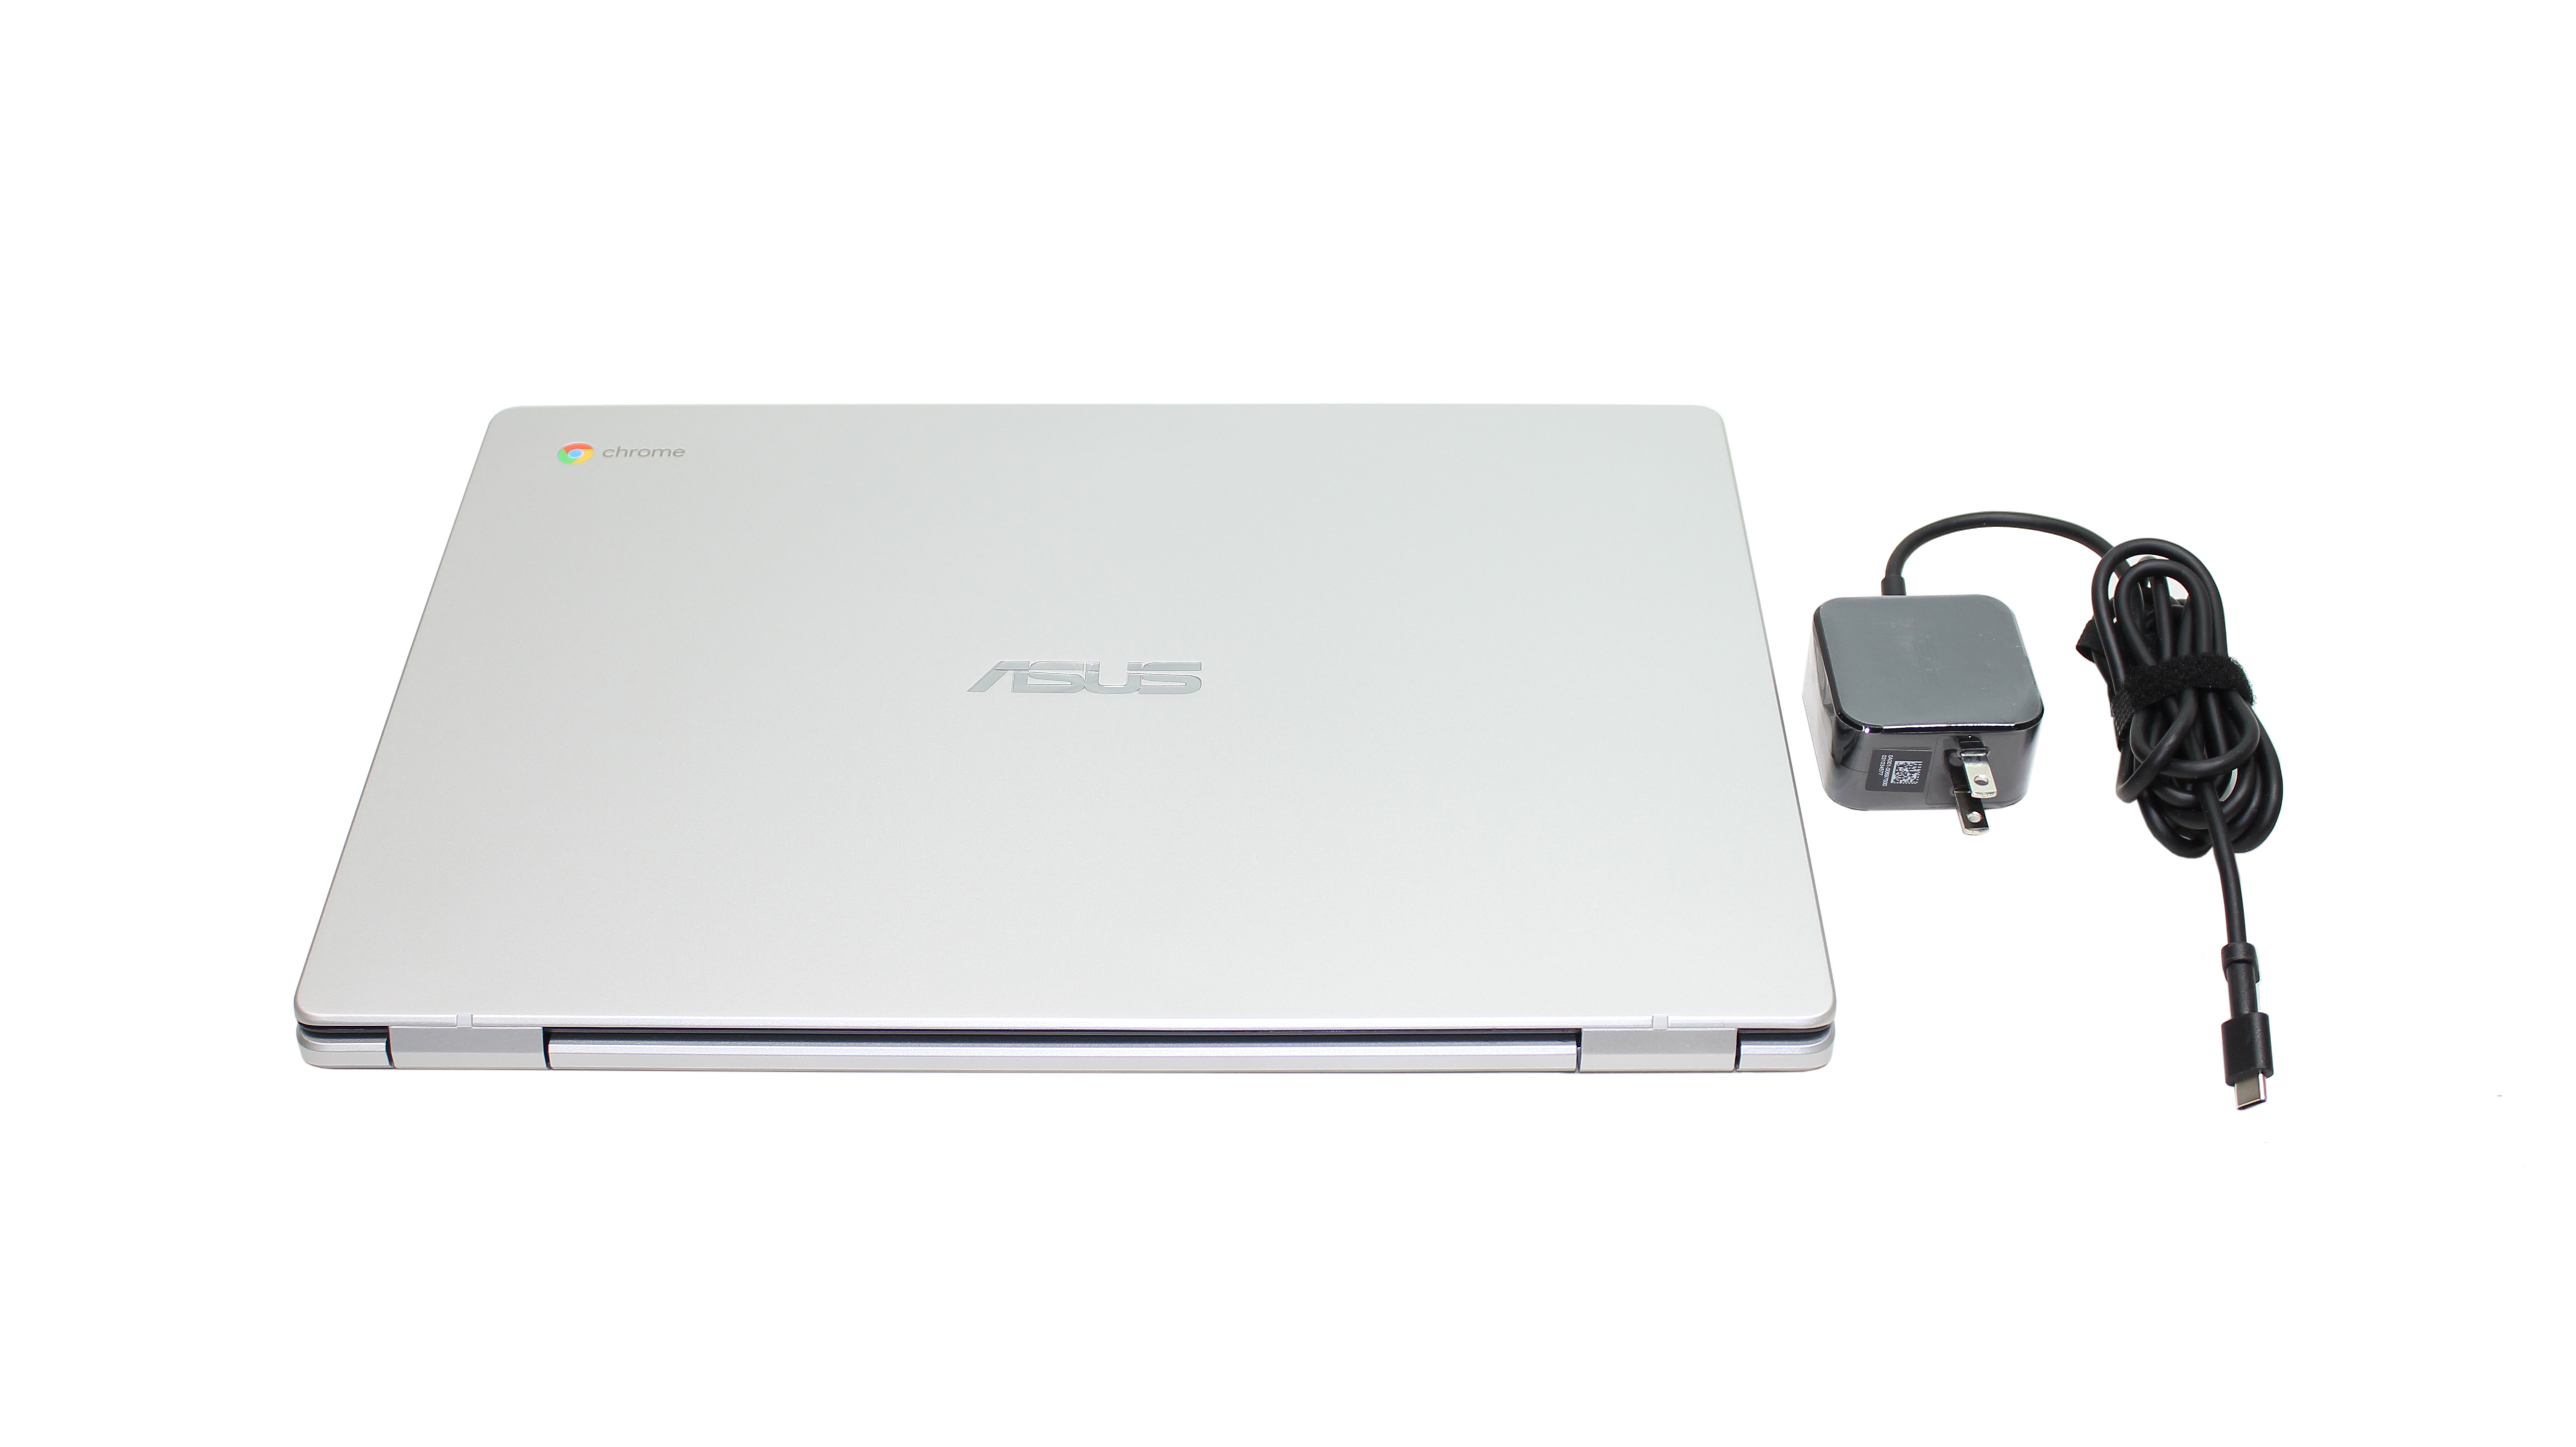 ASUS Chromebook 15.6" Intel Celeron N3350 1.1 GHZ RAM 4Gb eMMC 32Gb C523NA-DH02